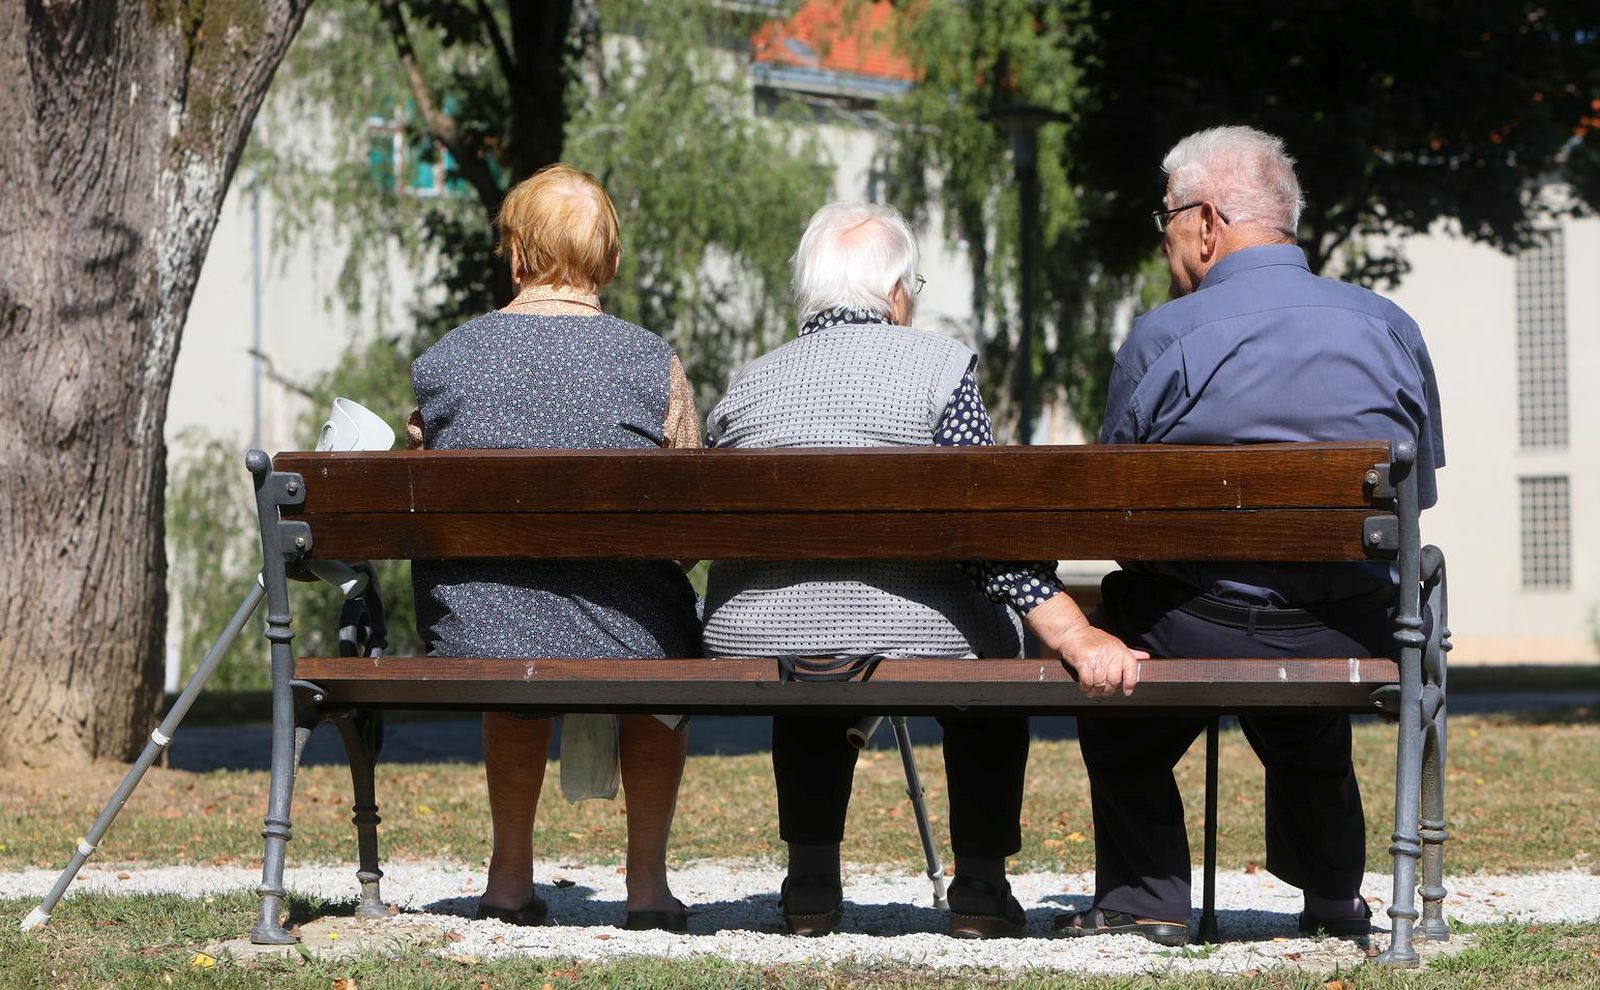 18.08.2021., Karlovac - Umirovljenici odmaraju u parku. rPhoto: Kristina Stedul Fabac/PIXSELL